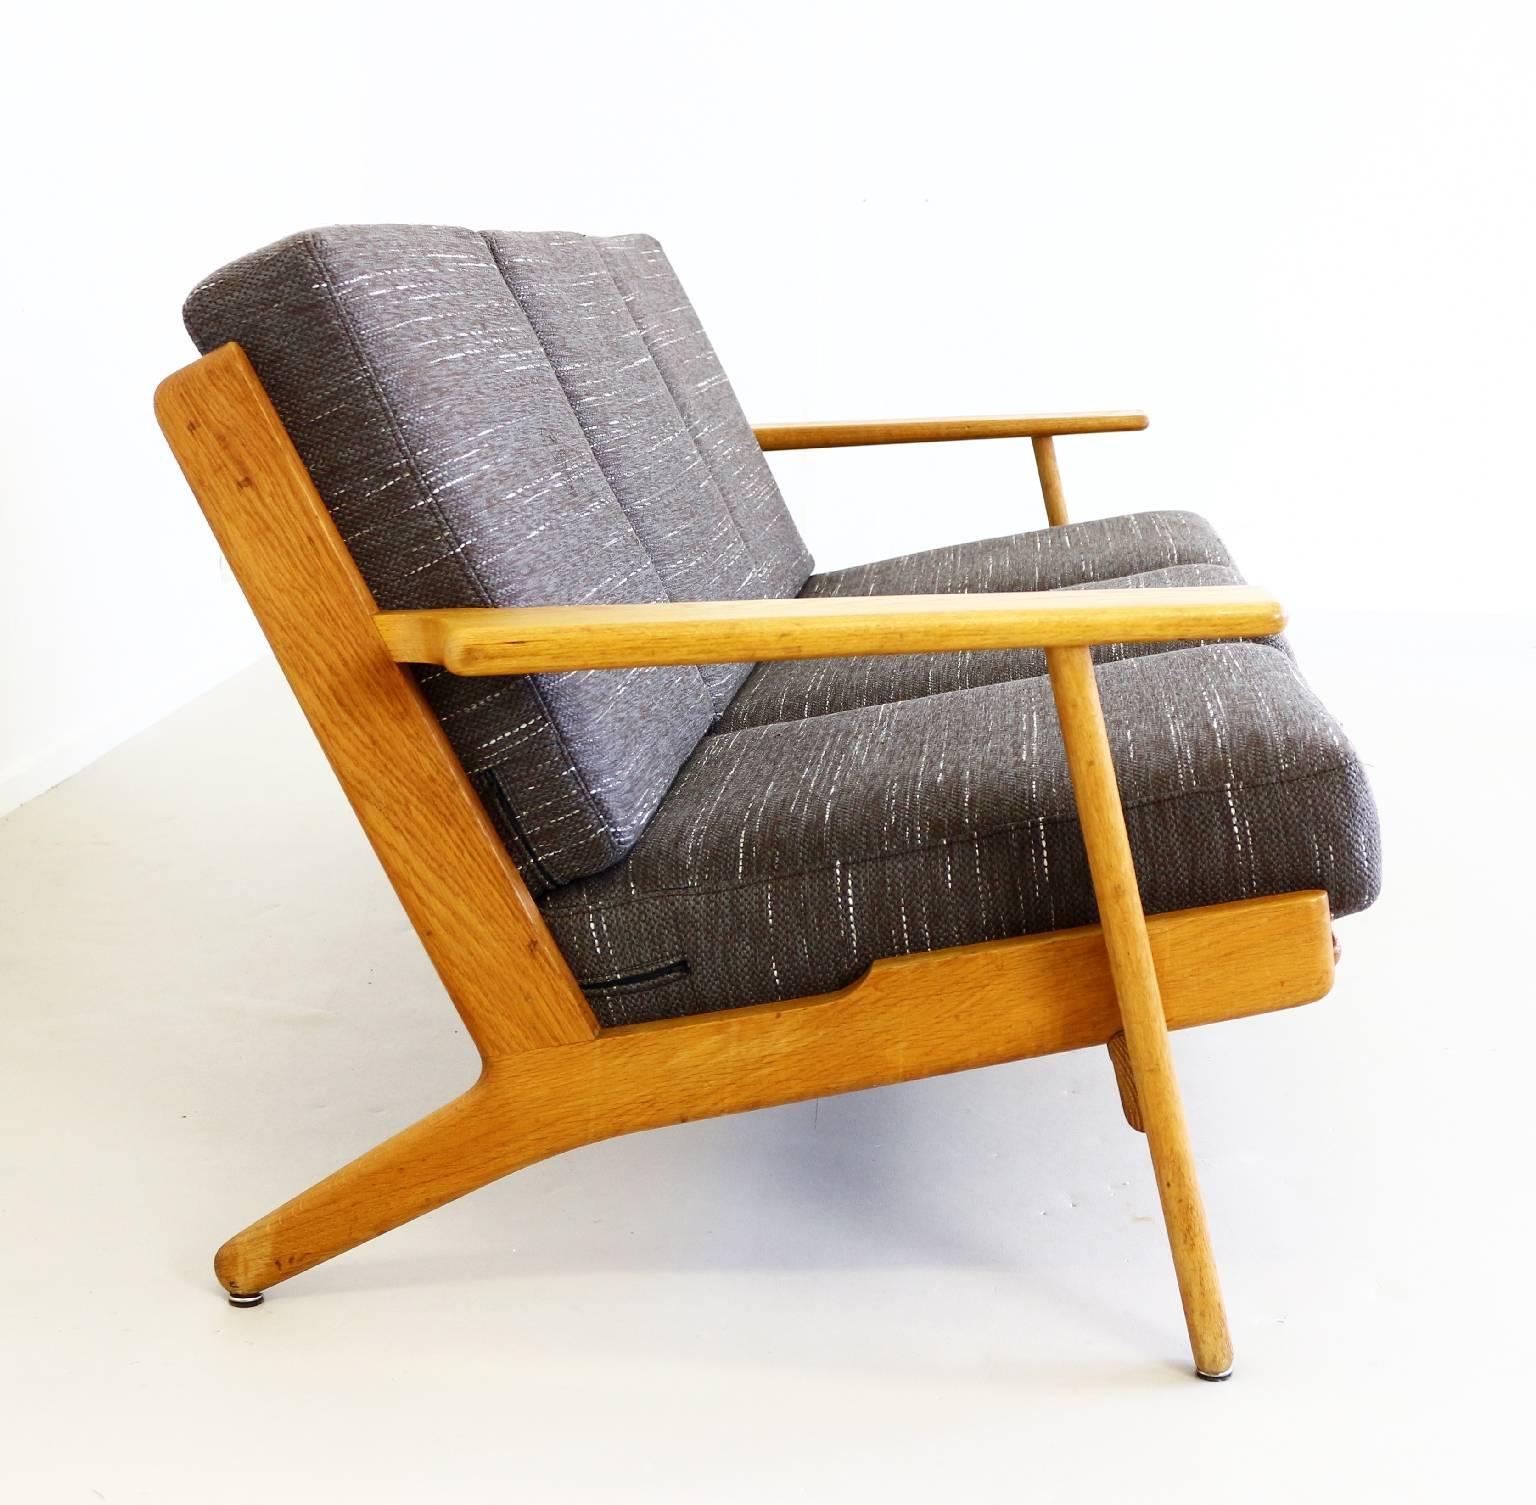 Danish design Hans Wegner sofa
in solid oak.
Reupholstered in beautiful brown fabric.
Original spring cushions.
Model GE 290 and made by GETAMA, Denmark.